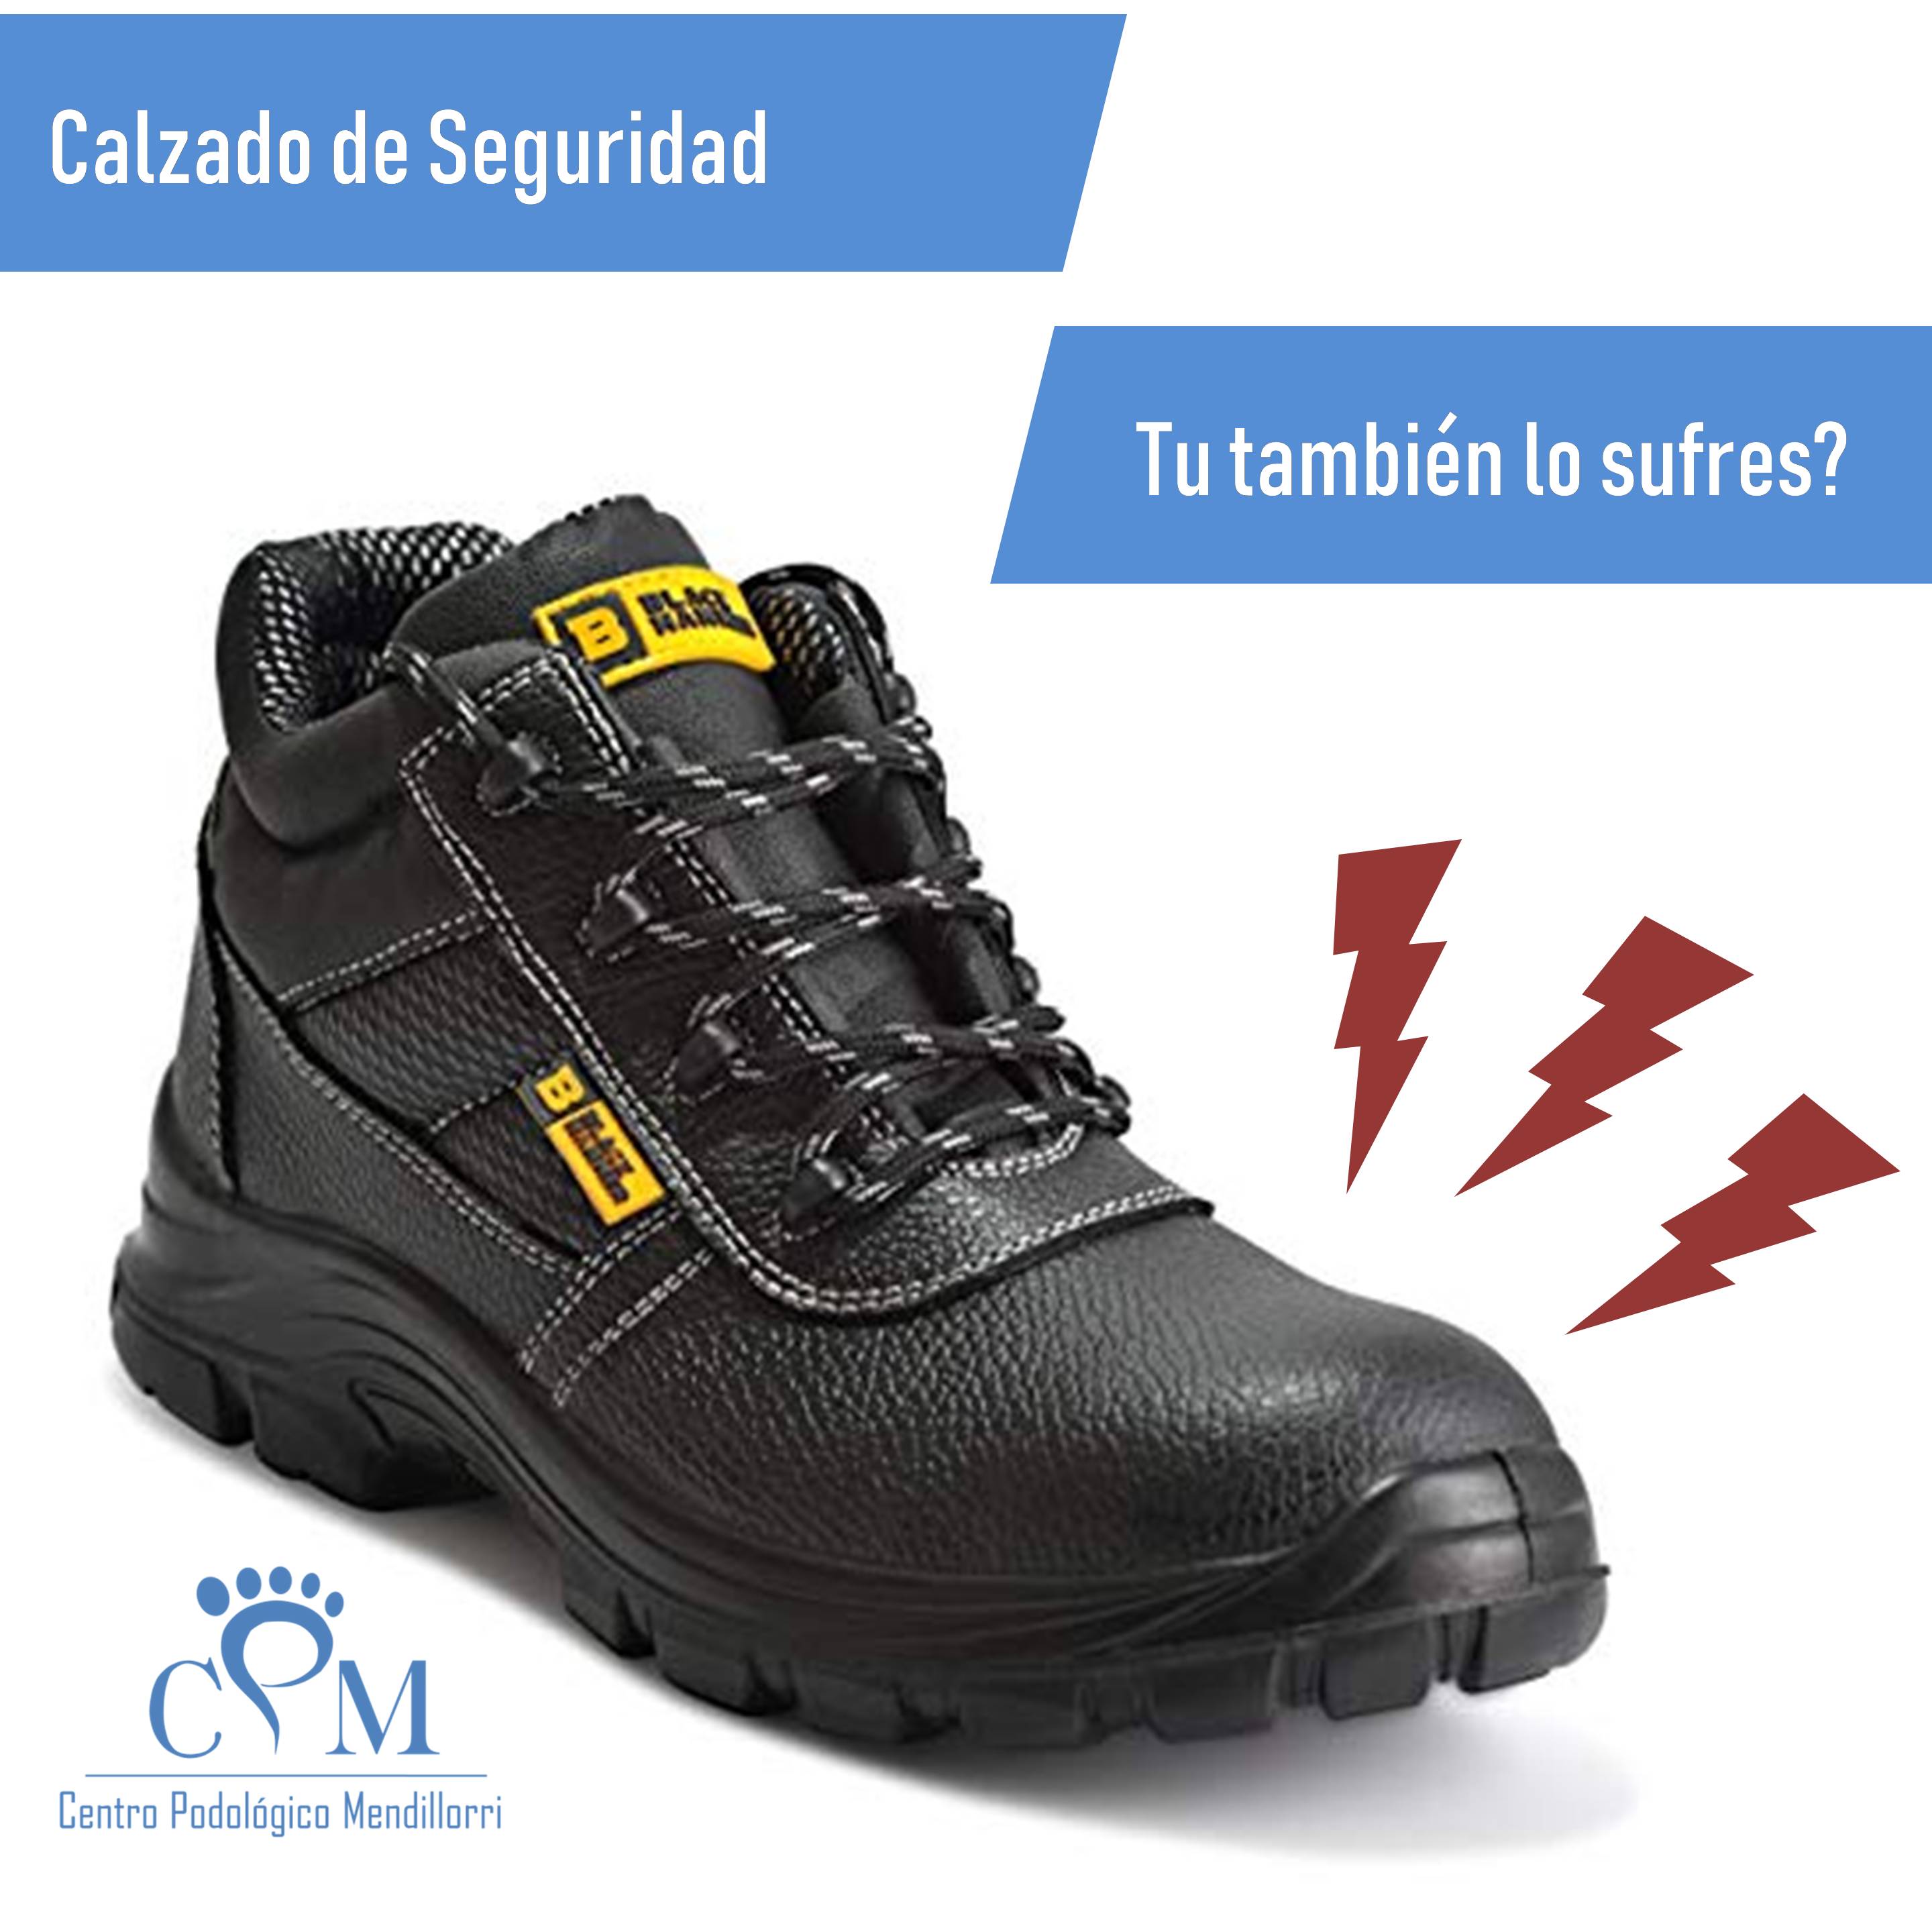 de WorkerWalker con Carbón Activado para el Control de Olores y Soporte Ortopédico del Arco Plantillas para Botas de Trabajo Zapatos de Seguridad Calzado de Trabajo 39 EUR - 6 UK Mujer 